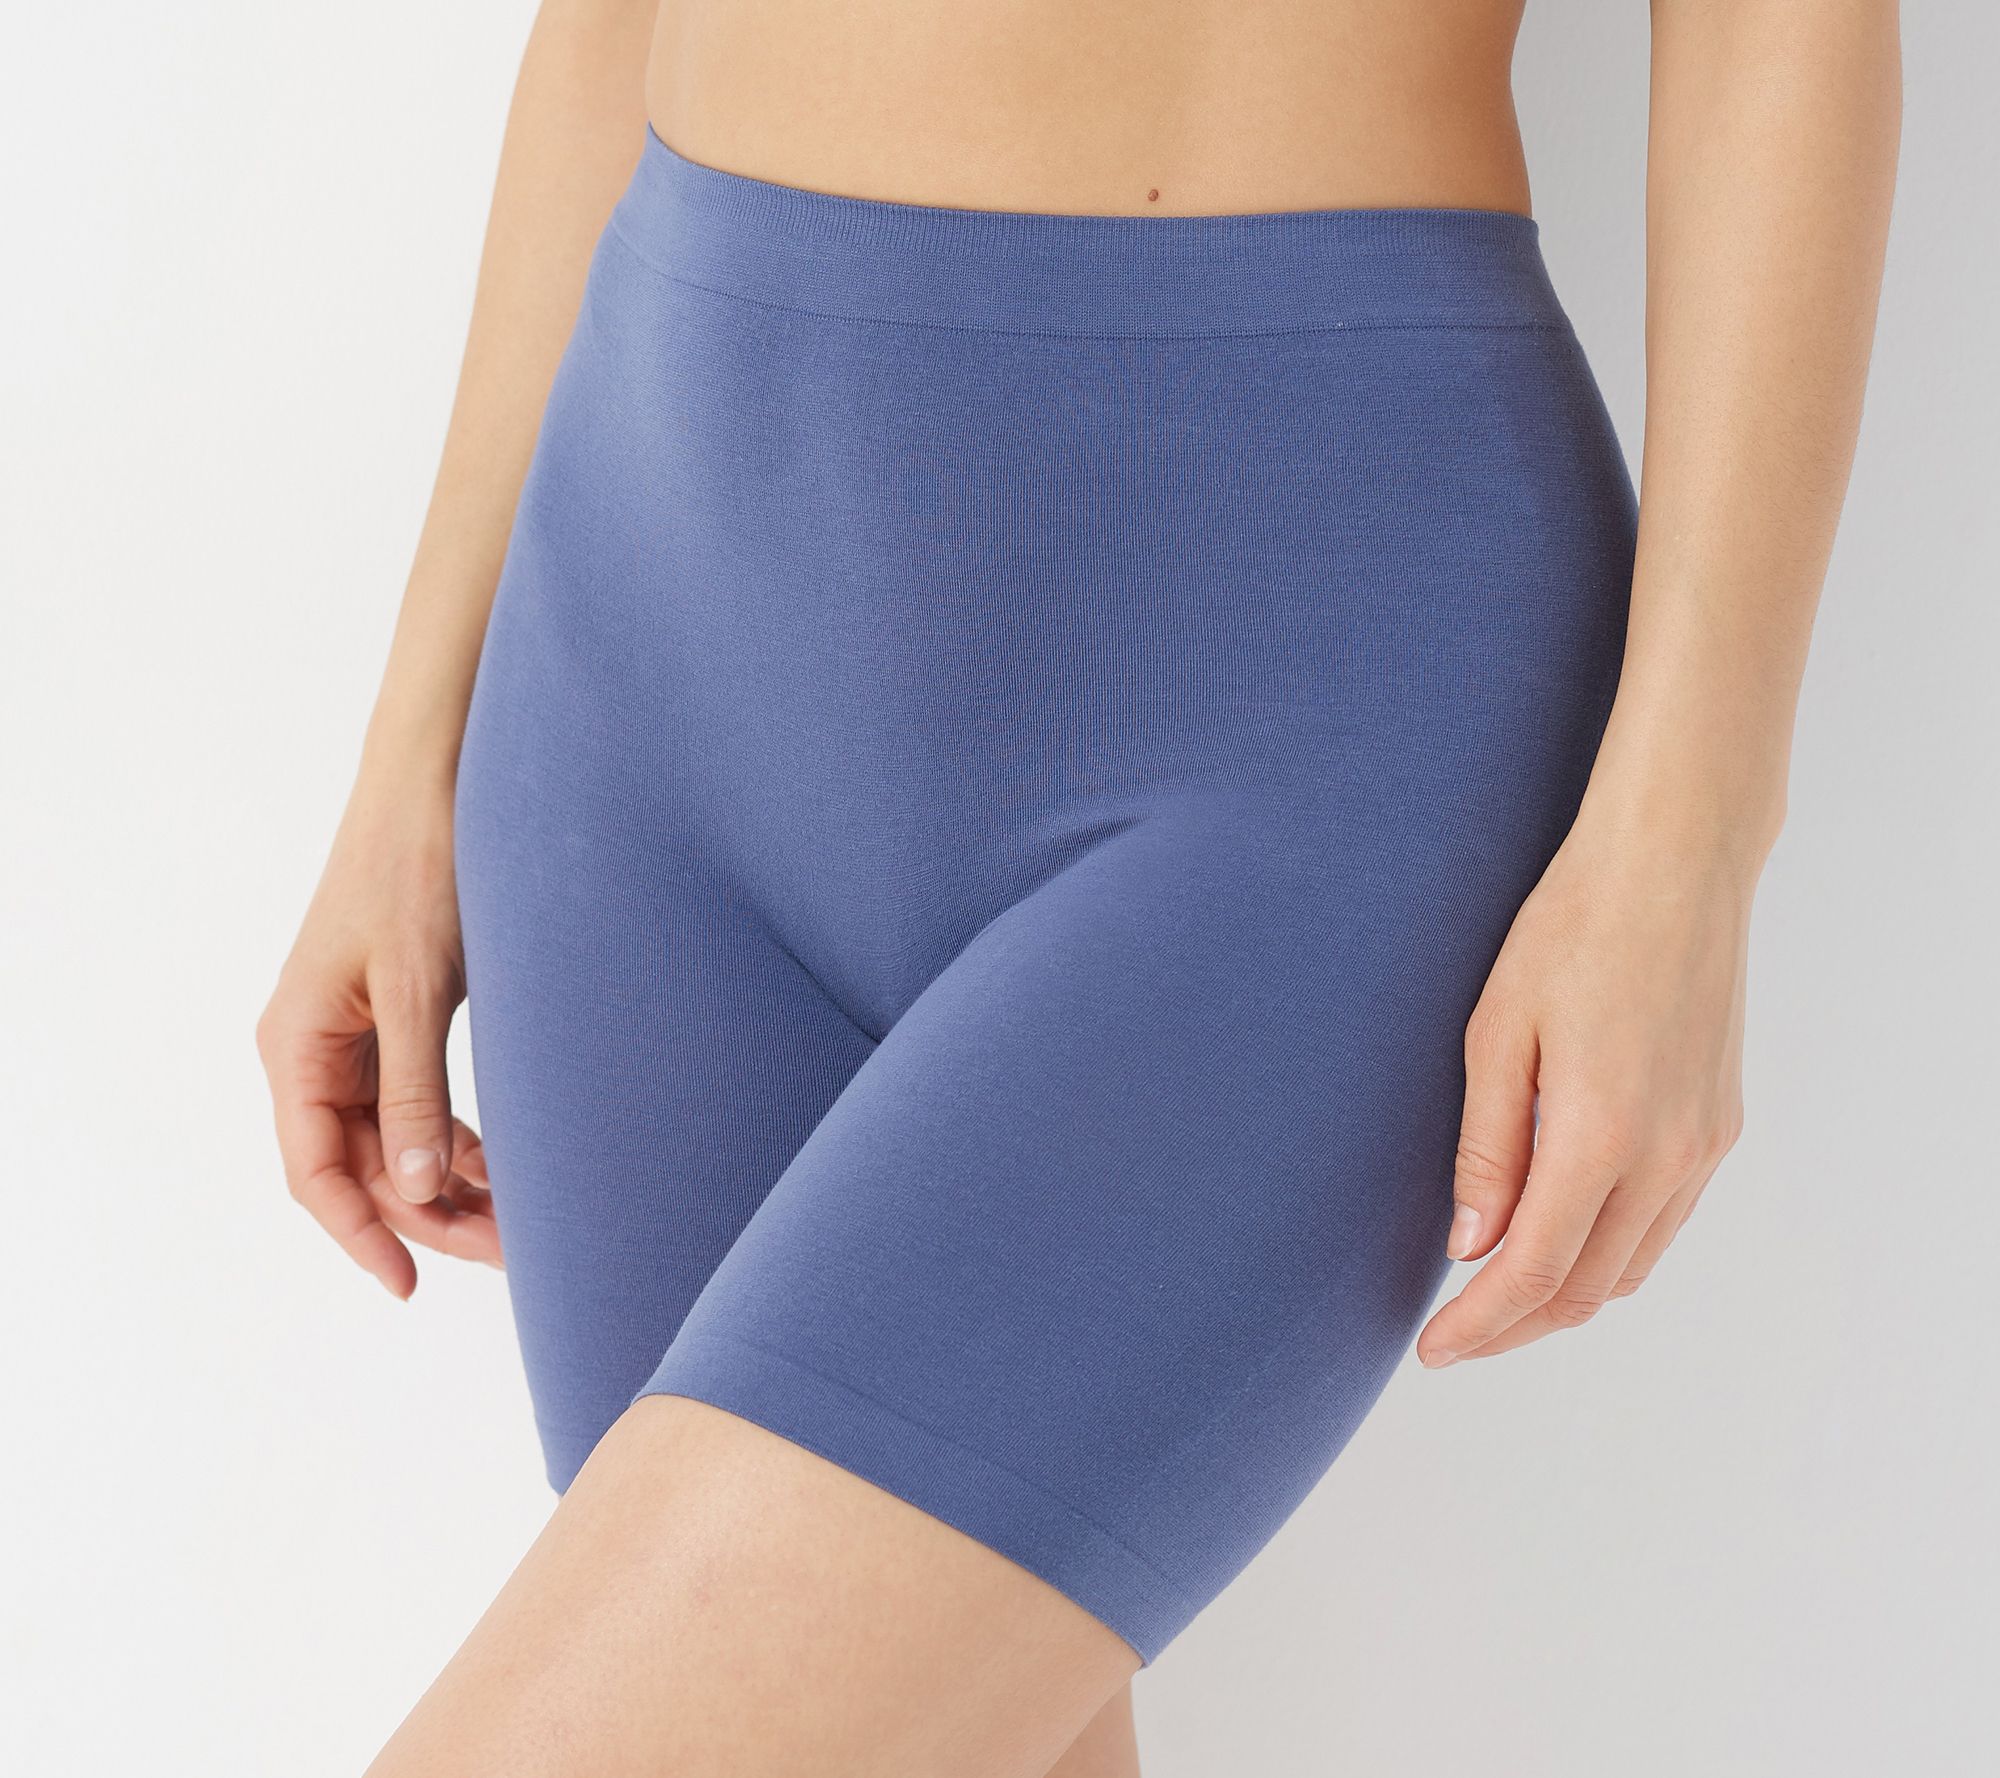 Buy Women's Slip Shorts for Under Dresses Panties (Size -26 til 32) Pack of  3 at